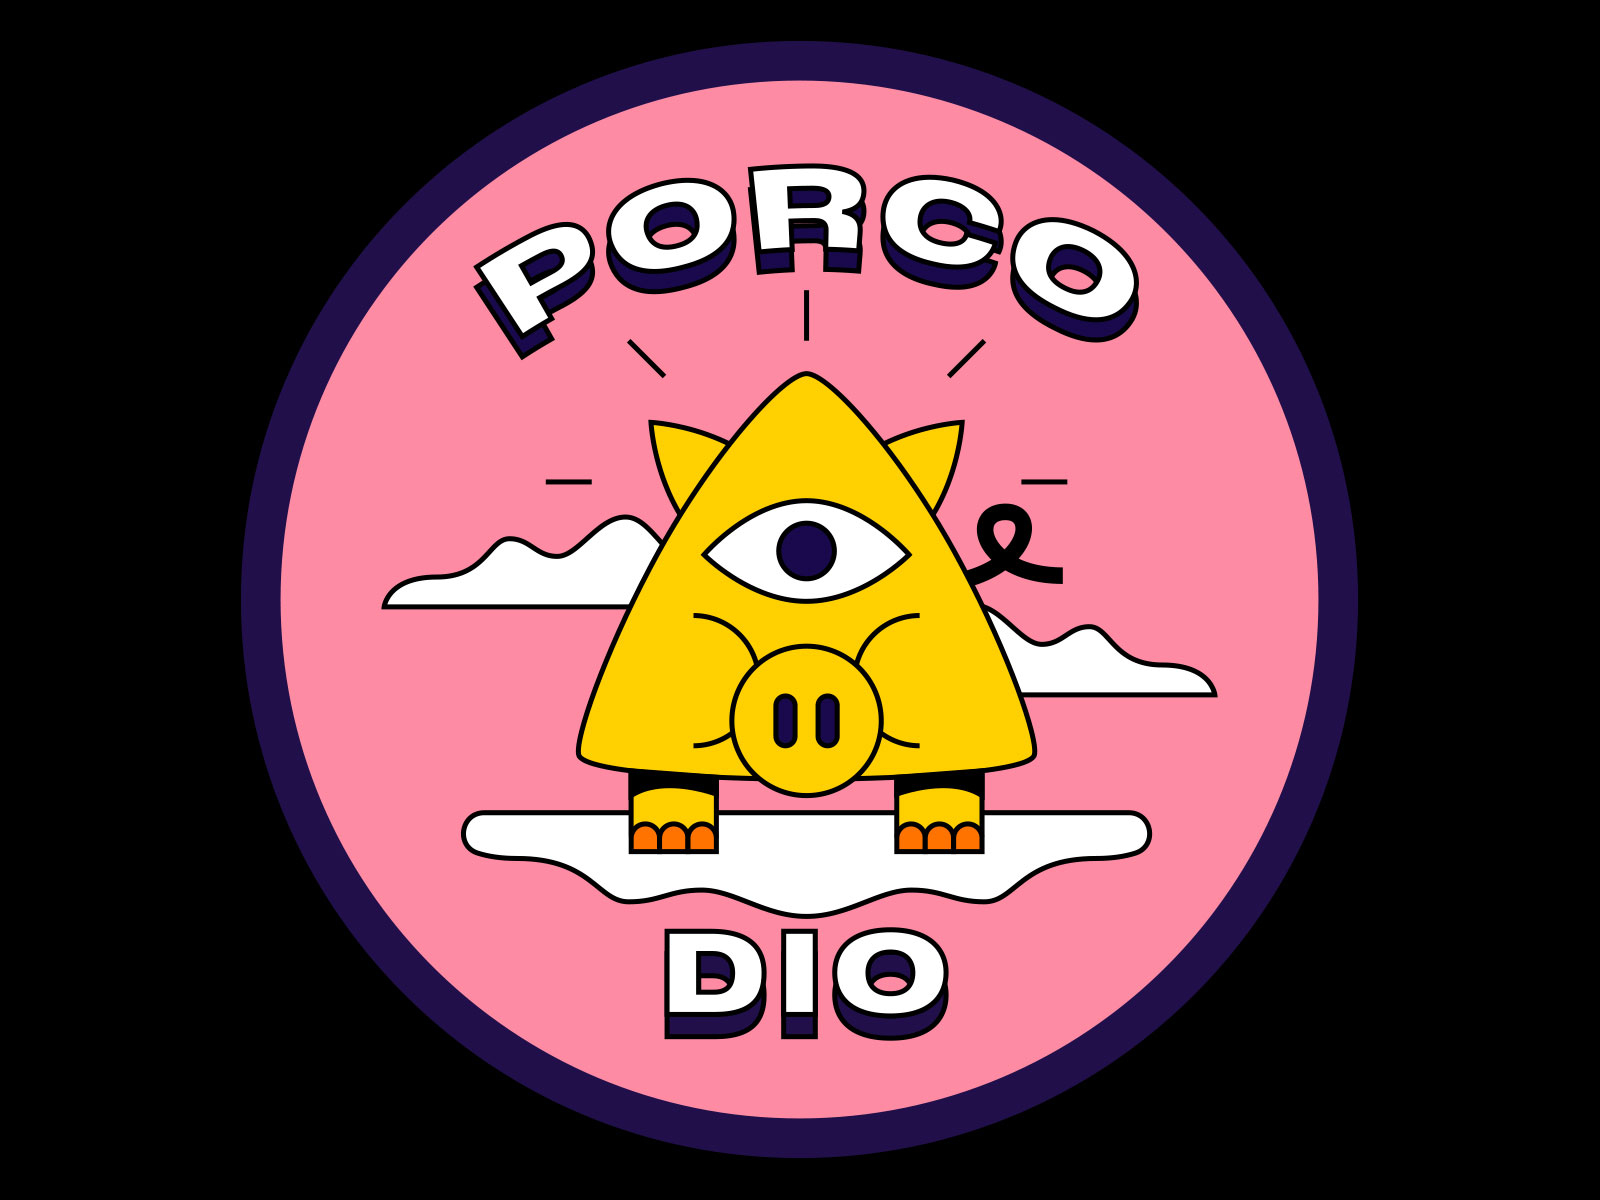 Porco Dio - Italian Sarcasm - Pin